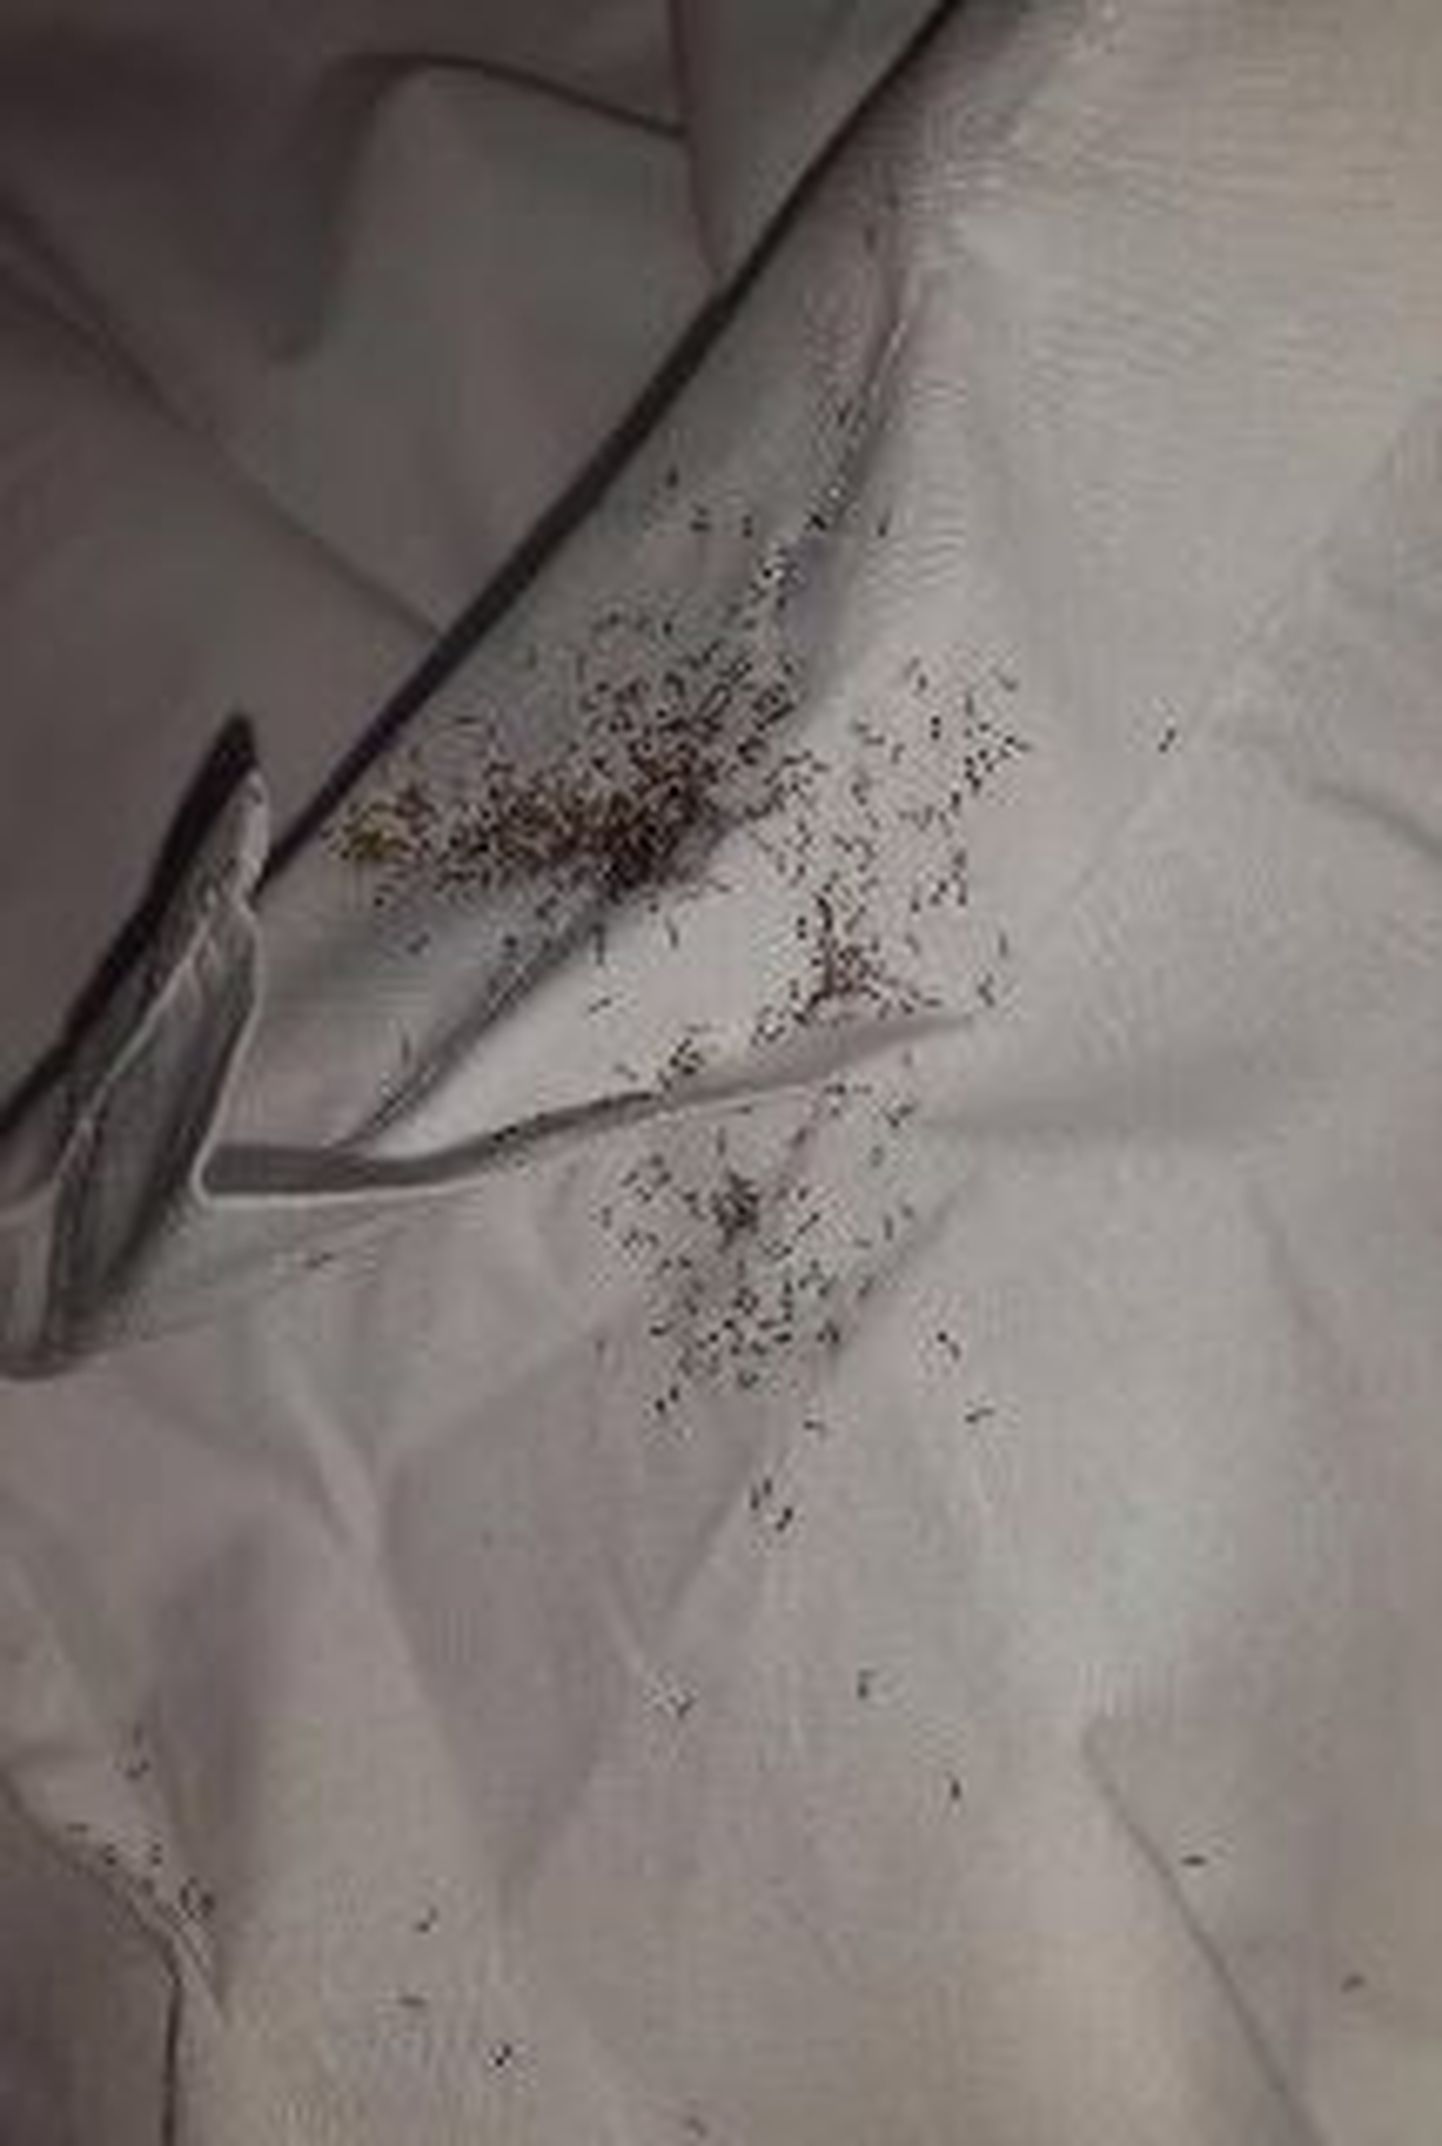 Fernando Muslera tehtud foto oma voodis olevatest putukatest.